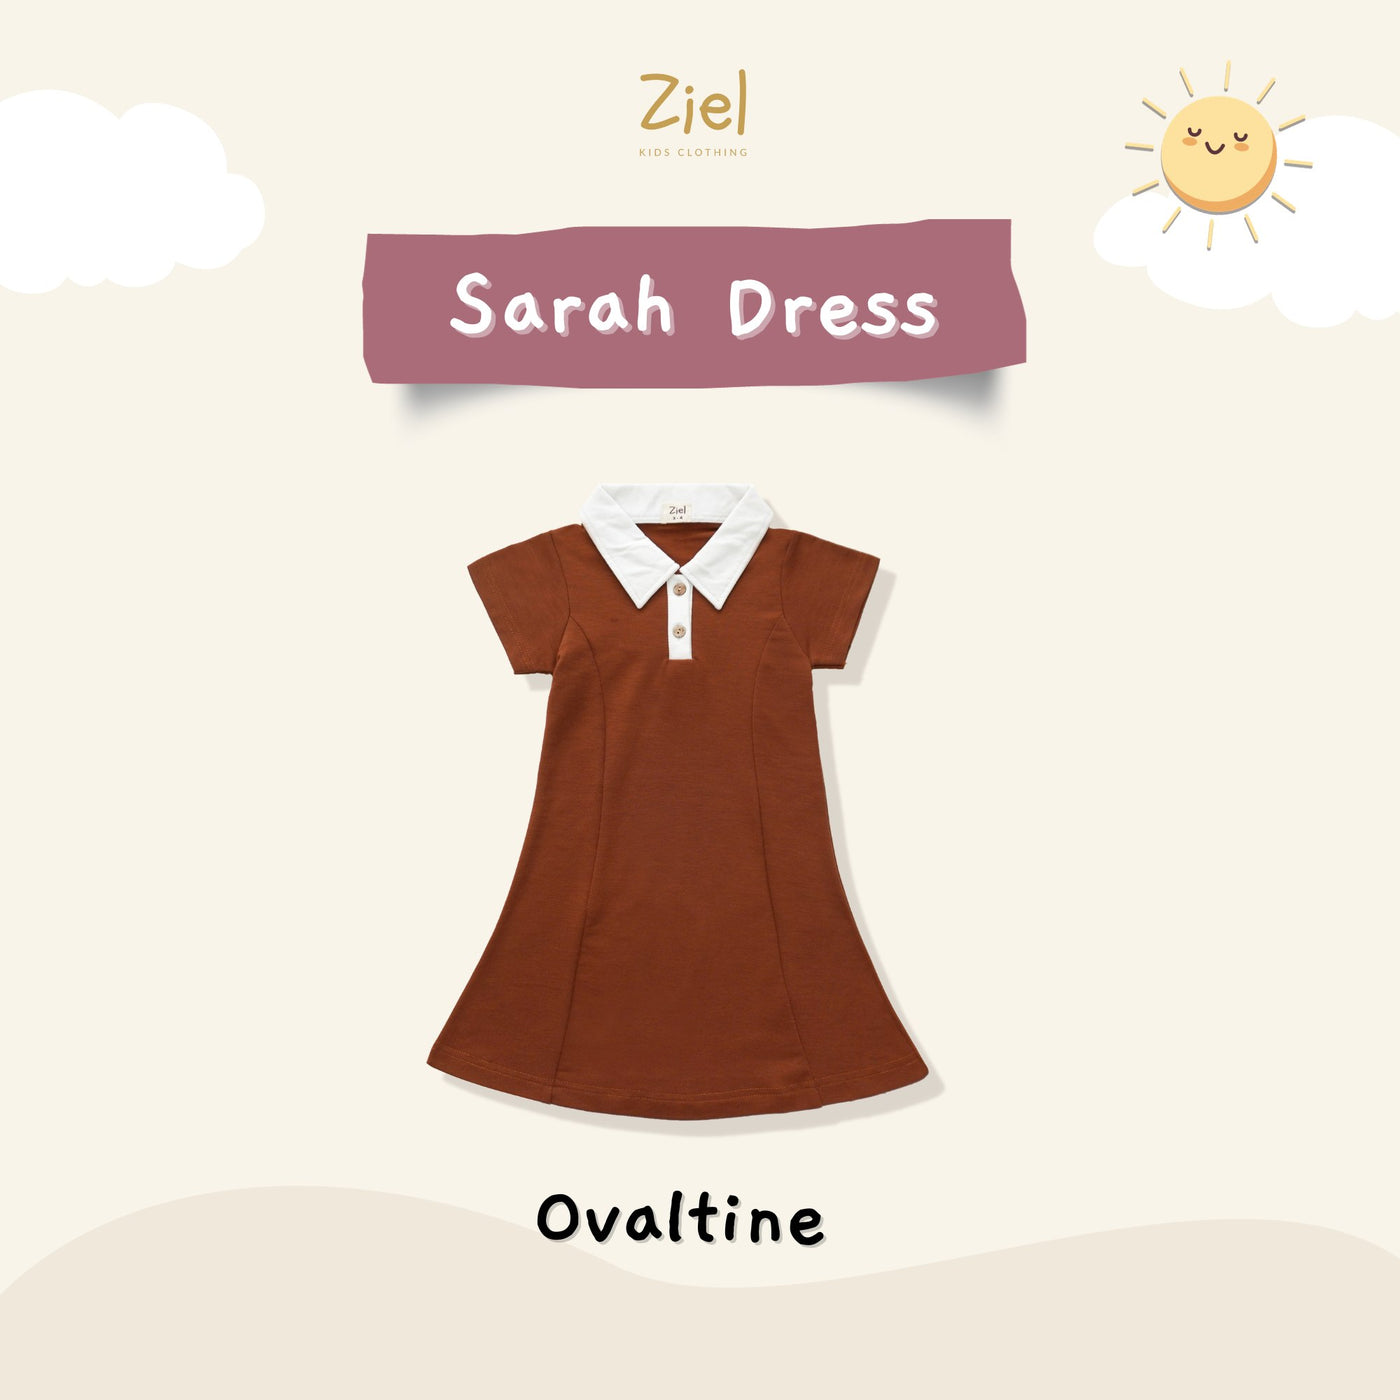 Sarah Dress